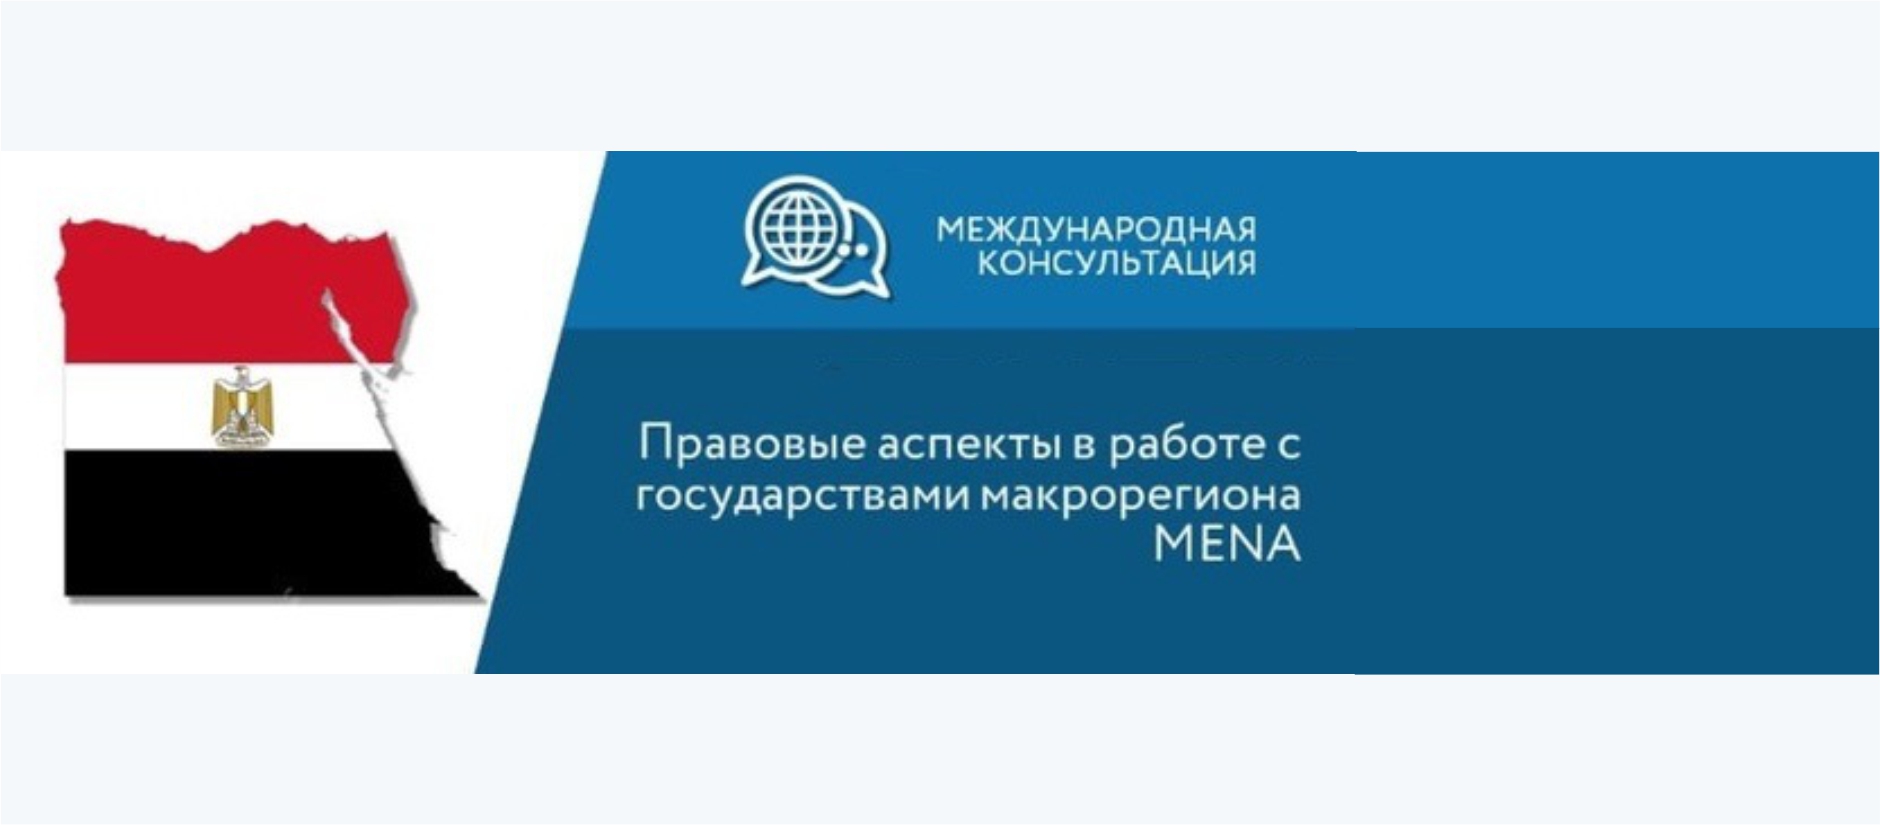 НИПТ принял участие в вебинаре «Правовые аспекты в работе с государствами макрорегиона MENA»